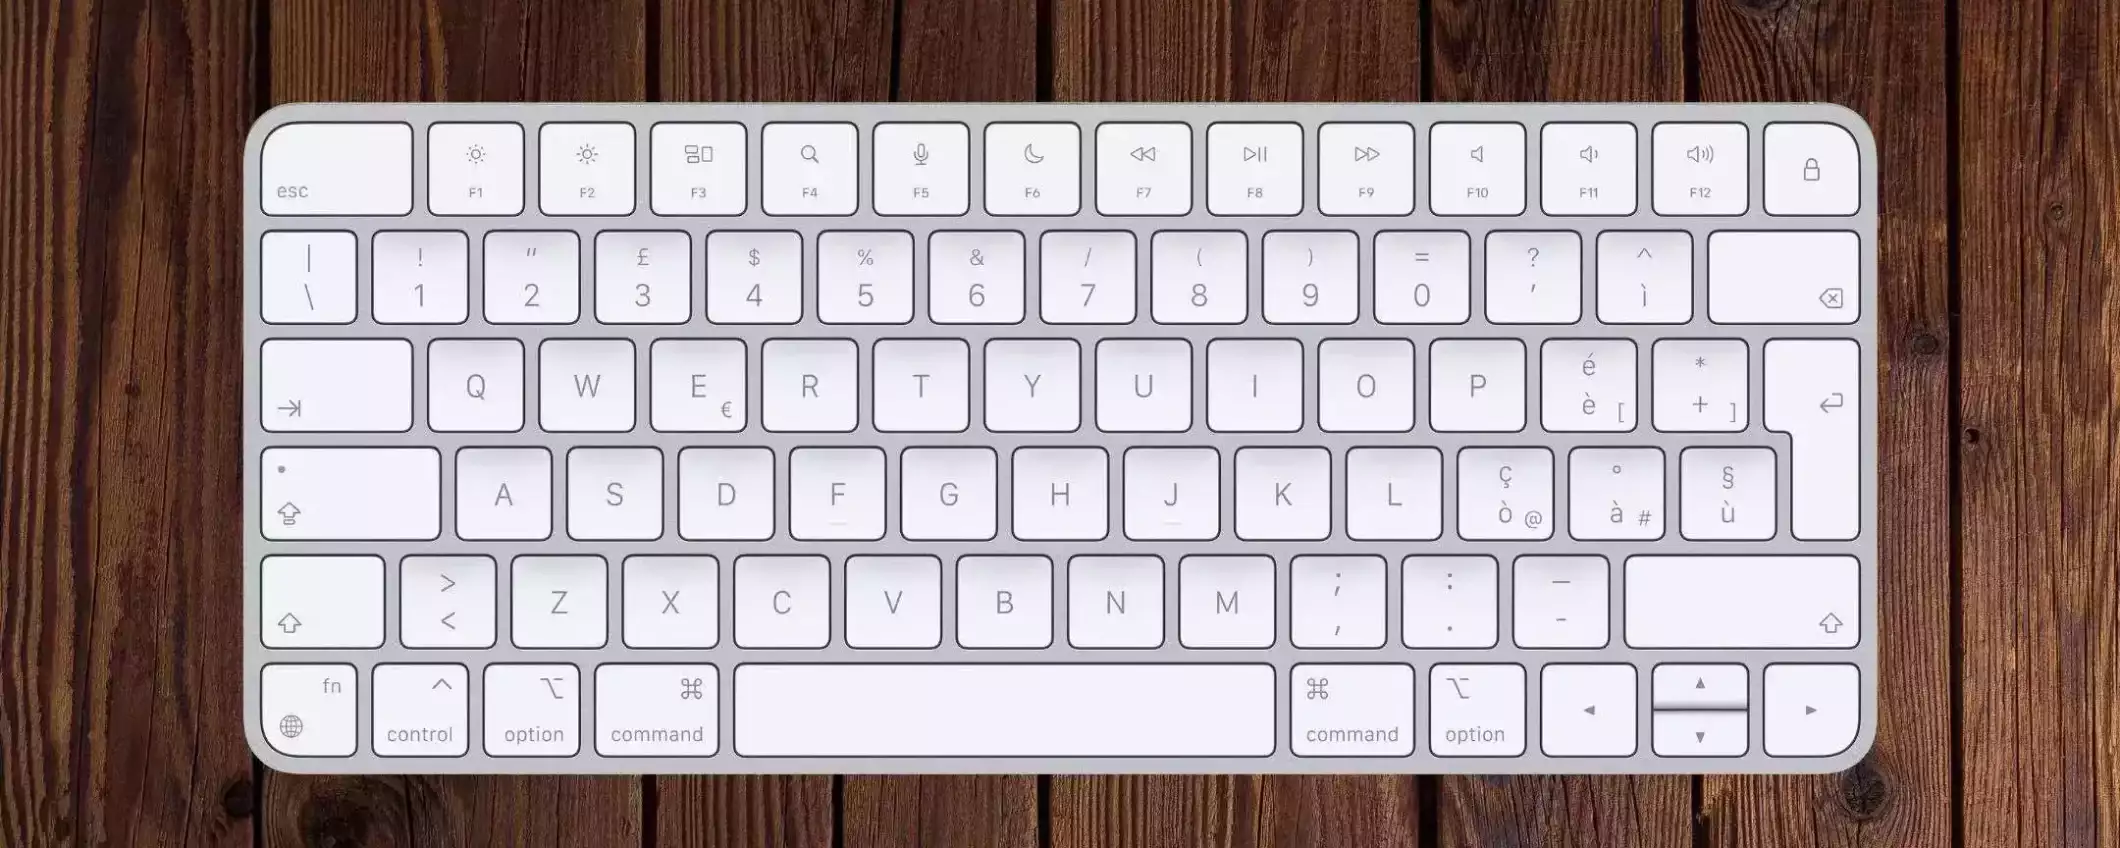 Apple Magic Keyboard a meno di 100€ su Amazon: il GADGET IMPERDIBILE